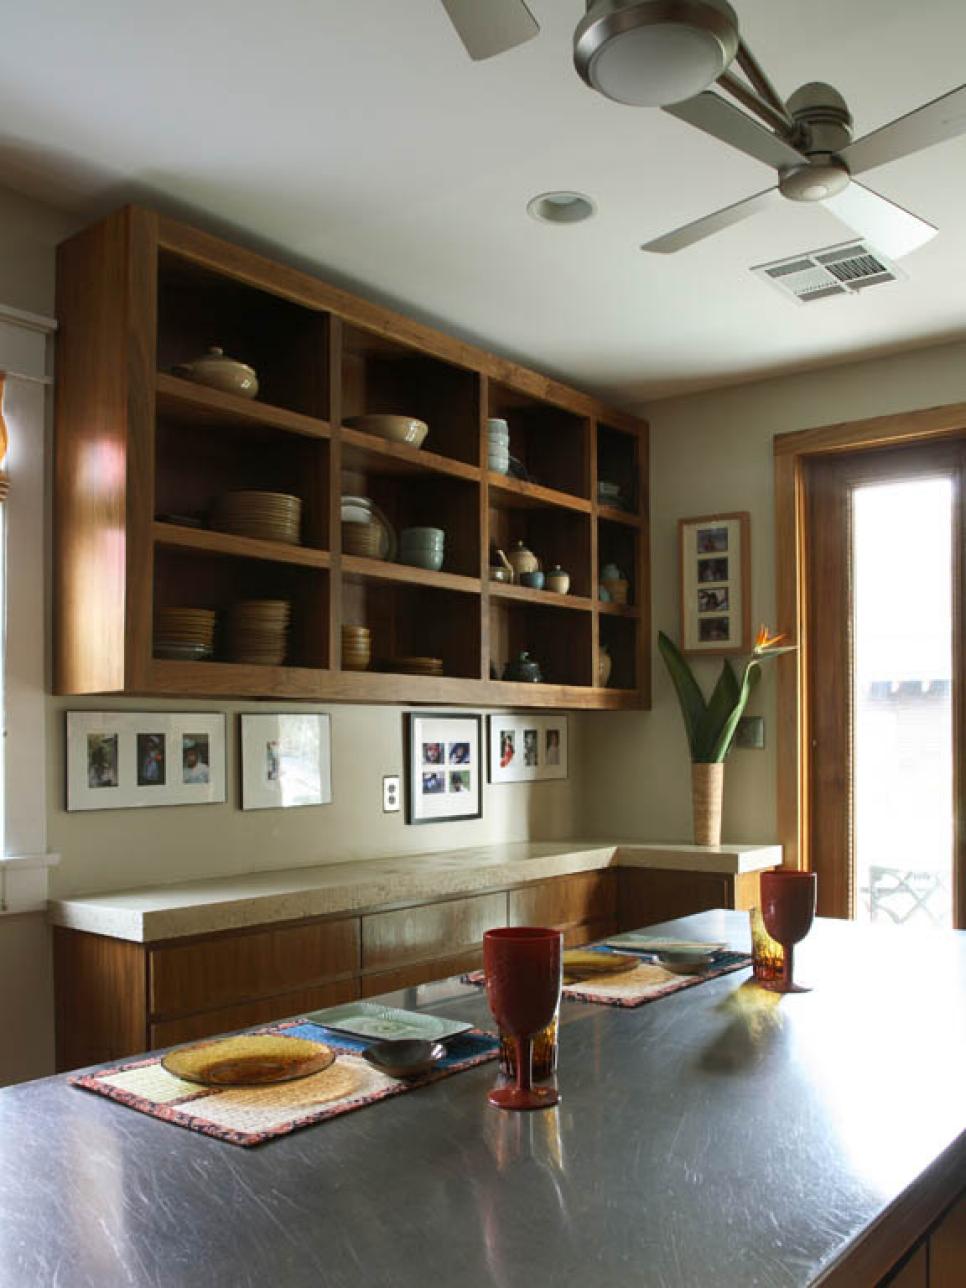 19 Kitchen Cabinet Storage Systems | DIY ups home wiring 